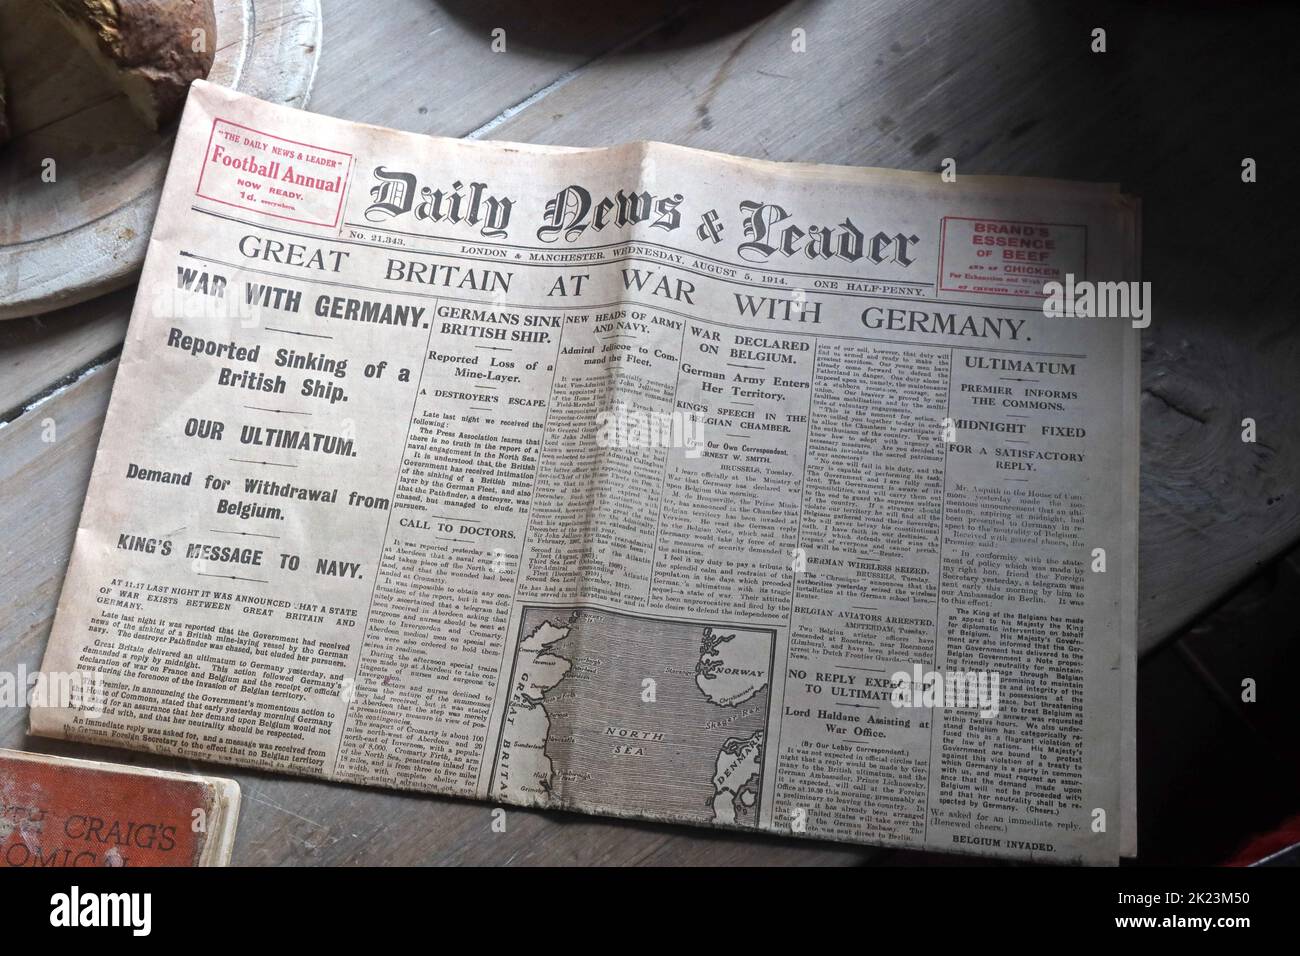 Daily News and leader, titre 1914, Grande-Bretagne en guerre avec l'Allemagne, sur une table de cuisine Banque D'Images